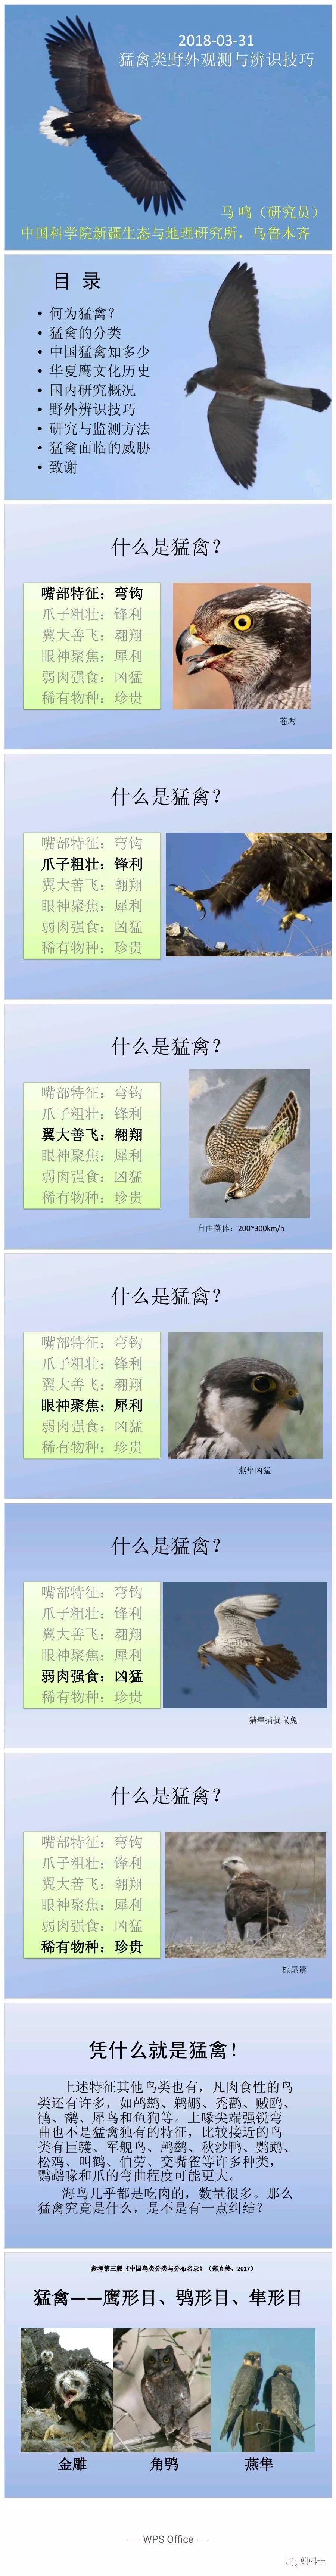 猛禽分类与辨识 讲座一 二 三 自由微信 Freewechat